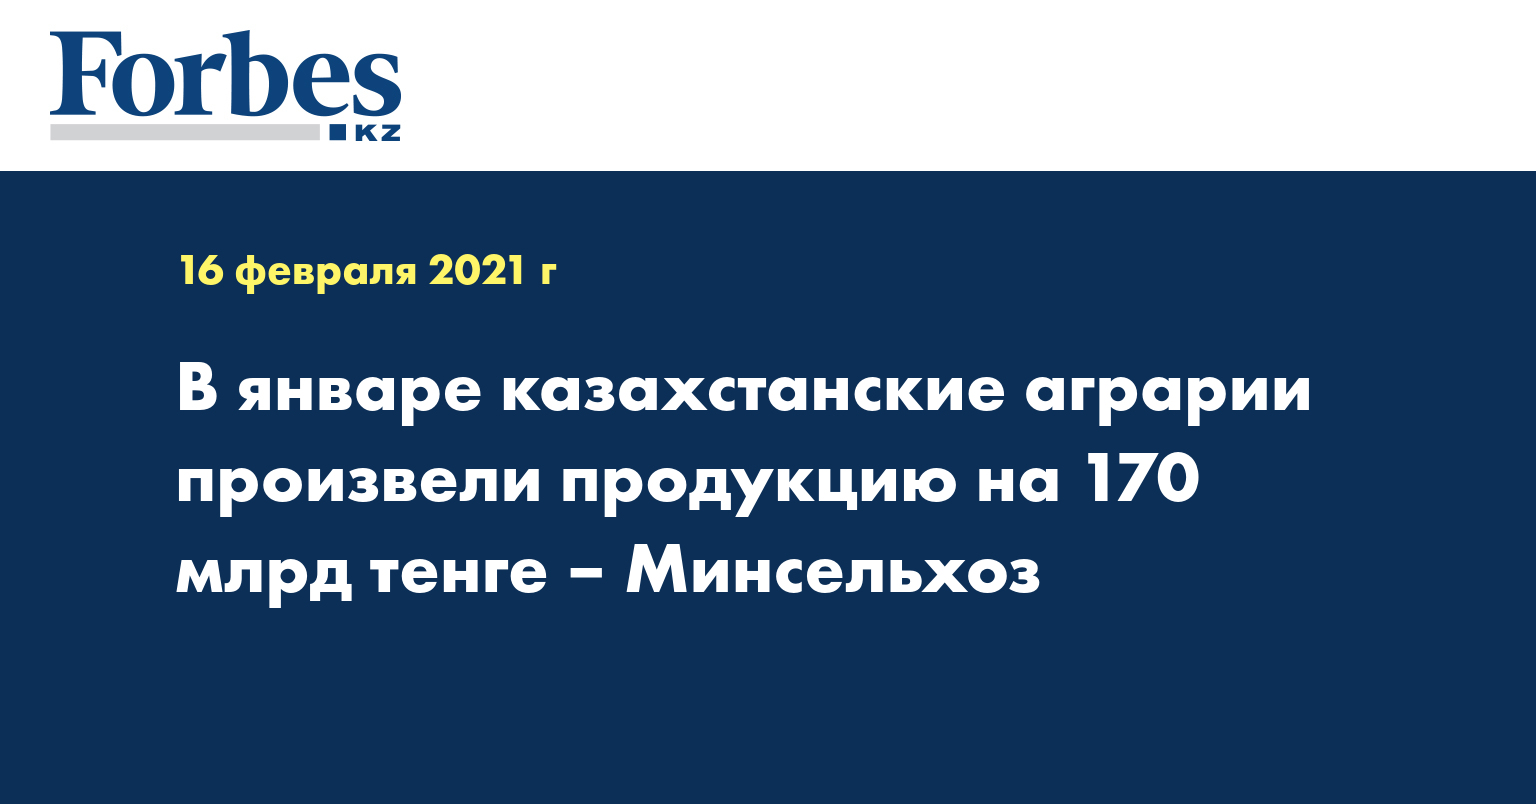 В январе казахстанские аграрии произвели продукцию на 170 млрд тенге – Минсельхоз